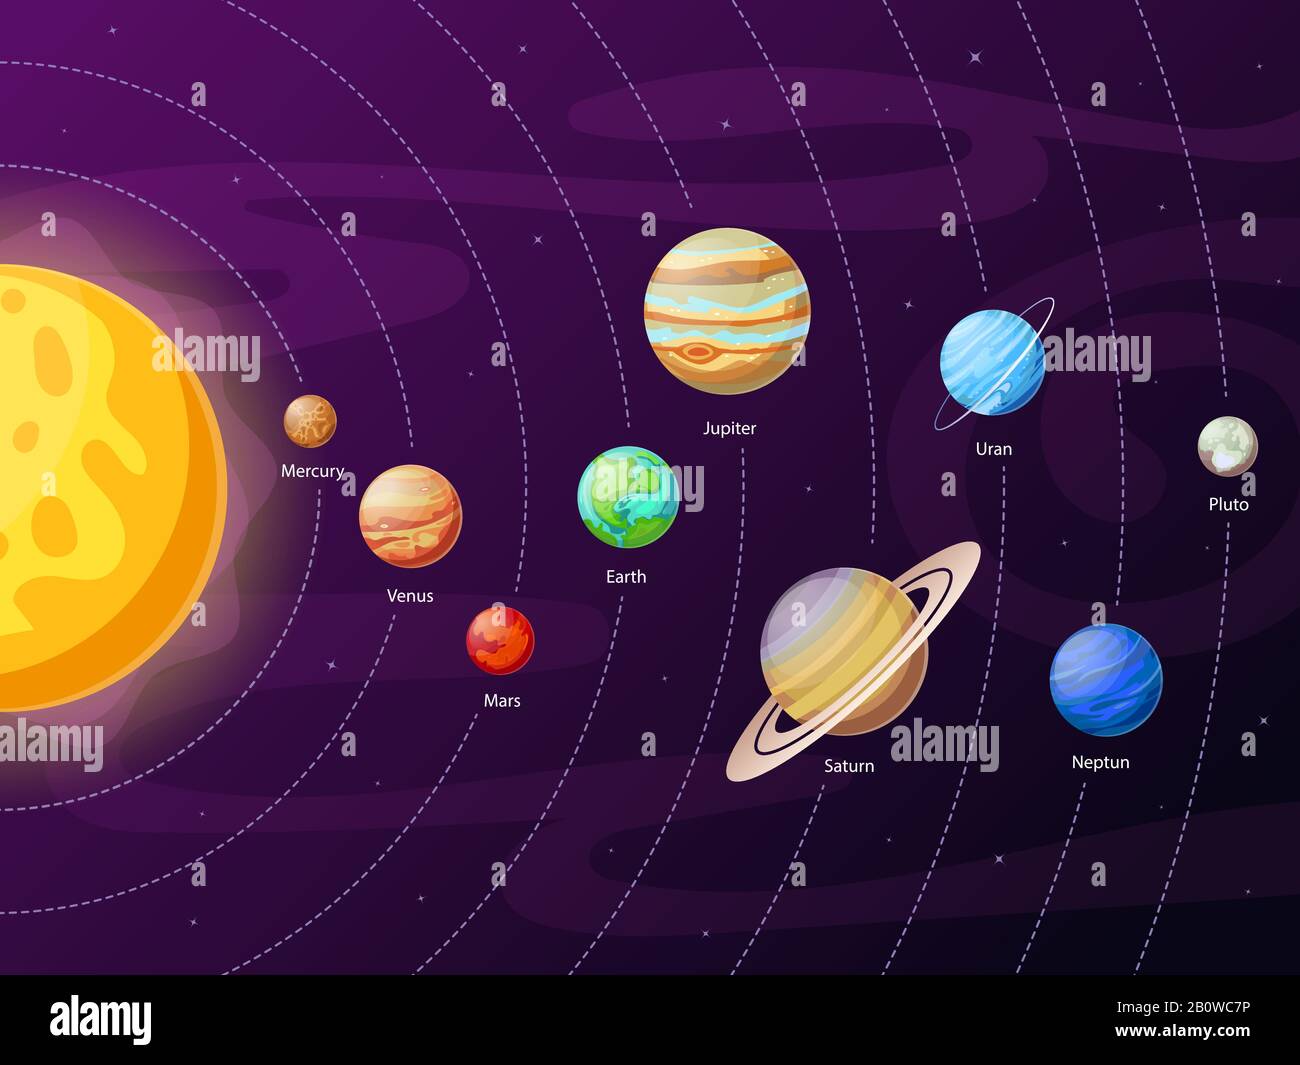 Cartoon Sonnensystem Schema. Planeten in Planetenbahnen um die Sonne. Astronomische Ausbildung von Planetensystemen Vektordarstellung Stock Vektor